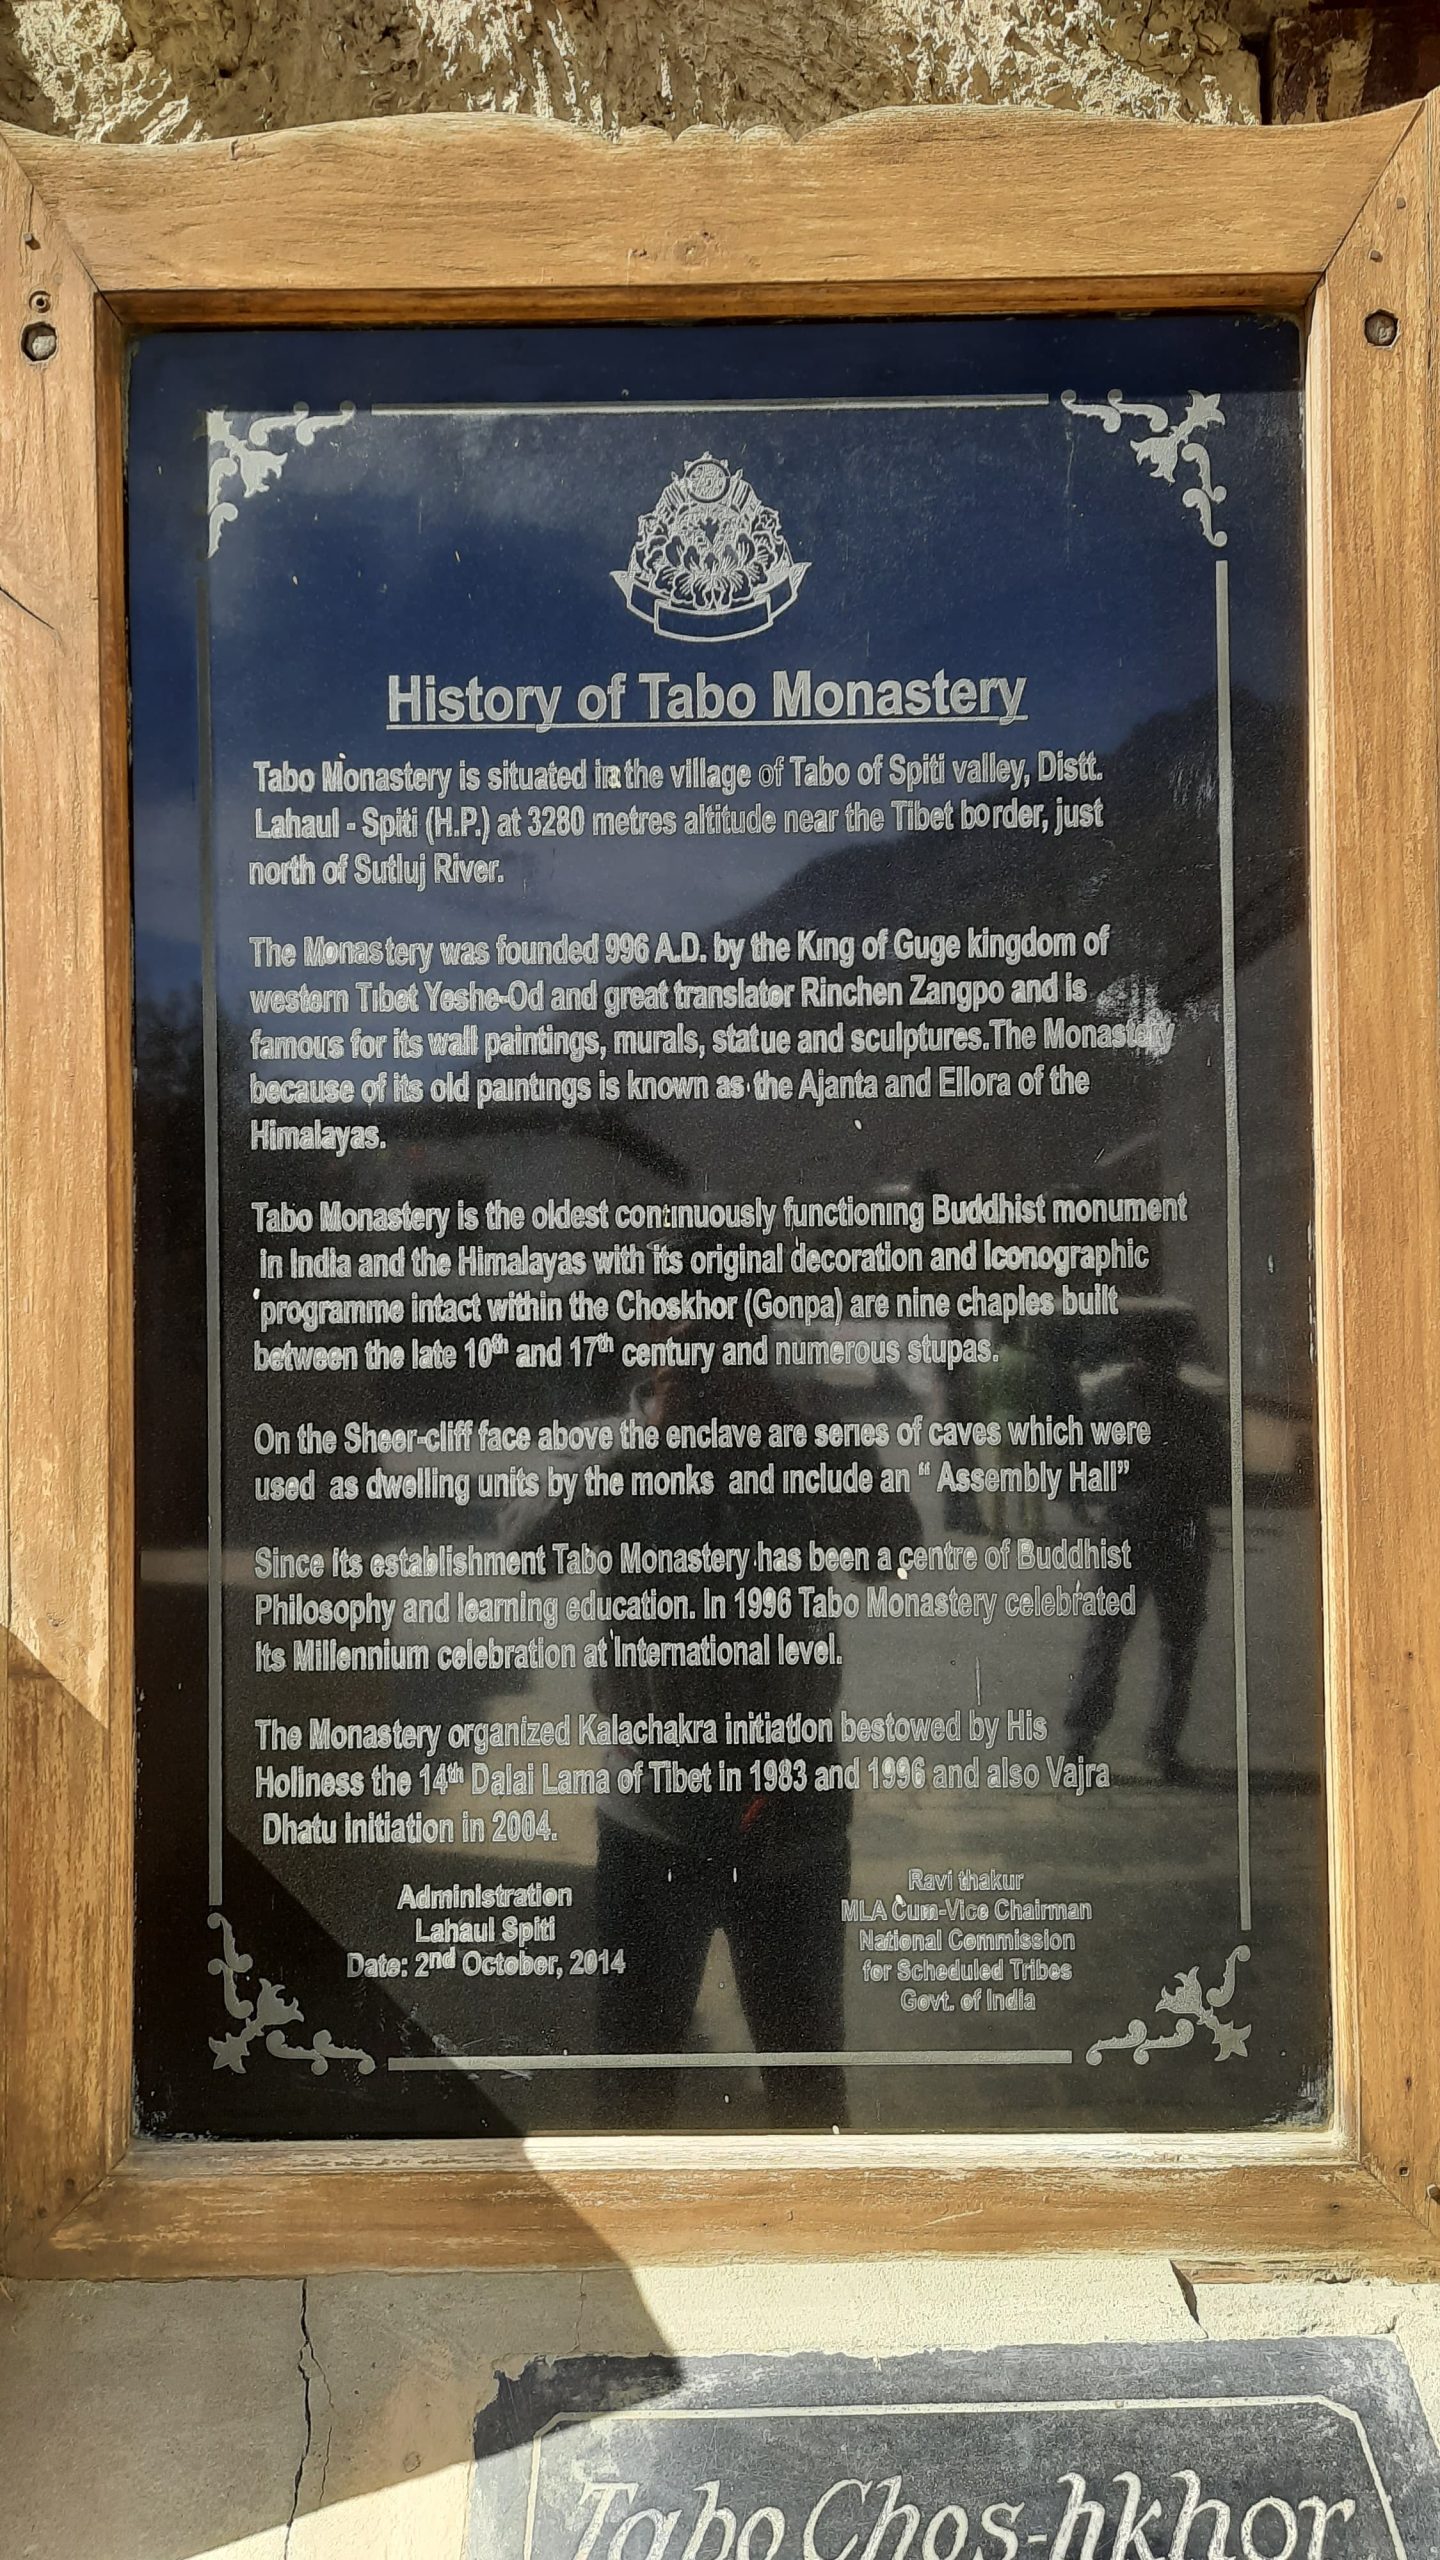 History of Tabo Monastery